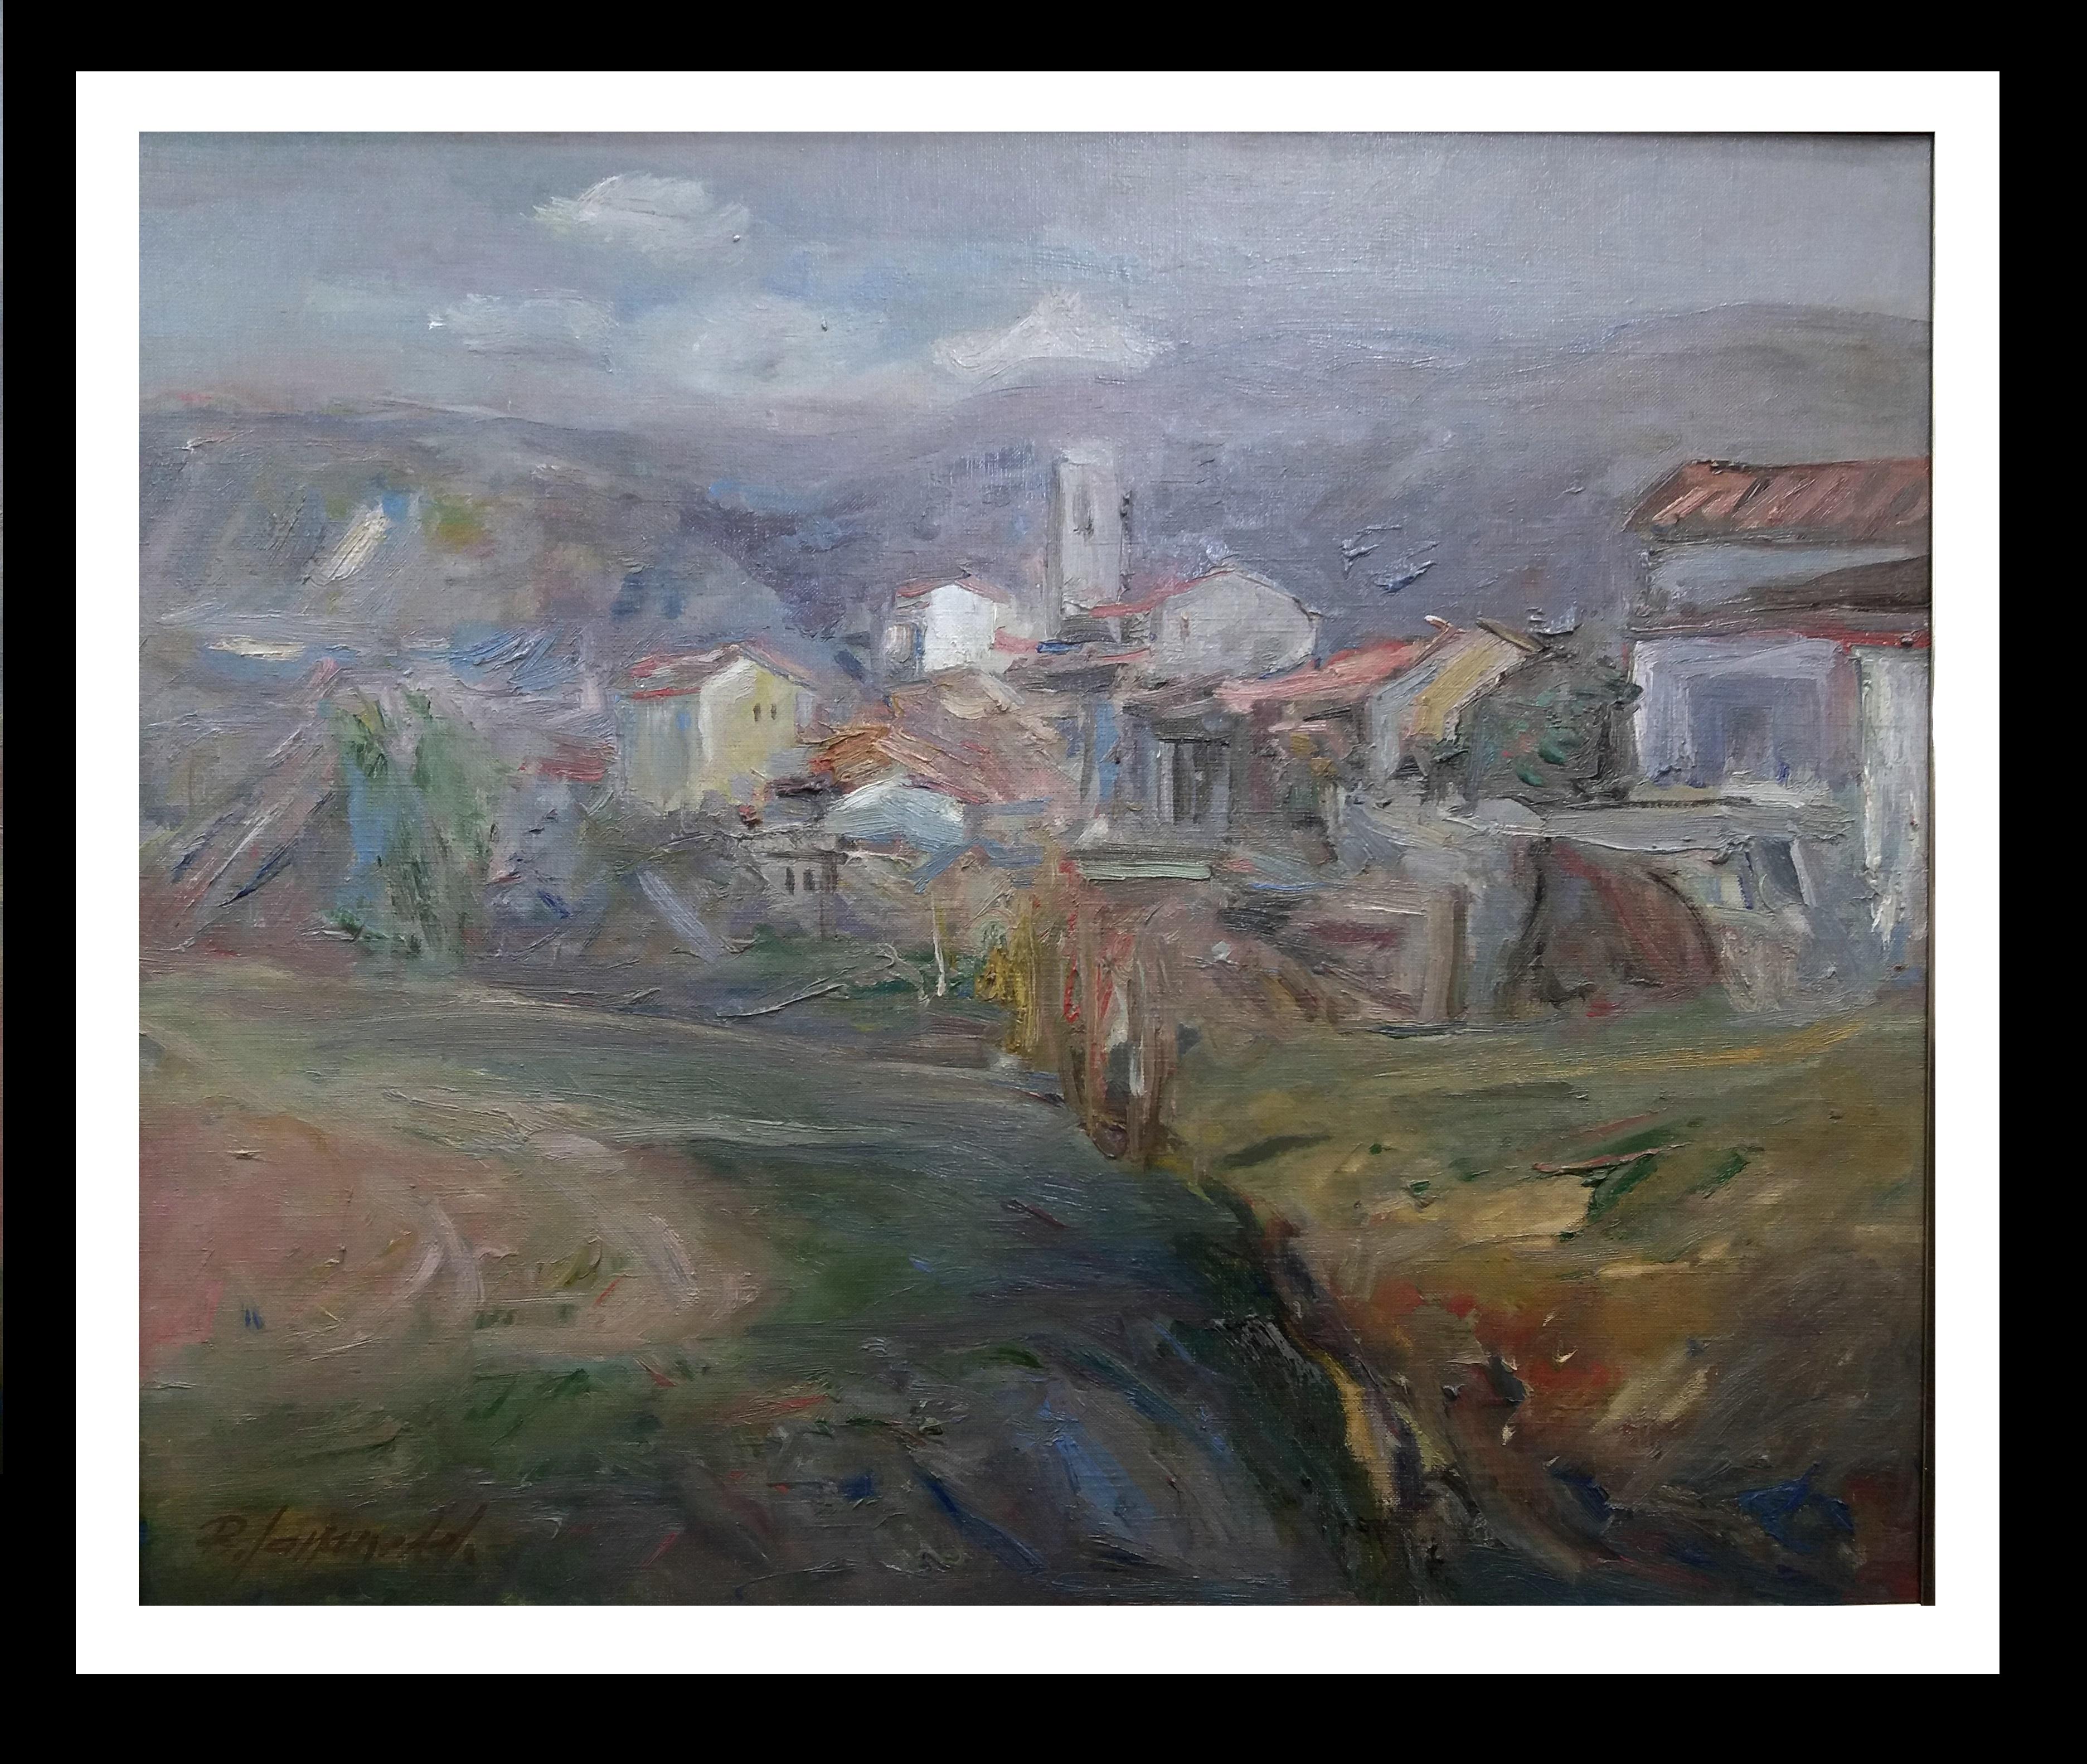 Landscape Painting Benet Sarsanedas - B. Sarsanedas. Village de montagne. "Rupit".  Original   peinture sur toile, 1975